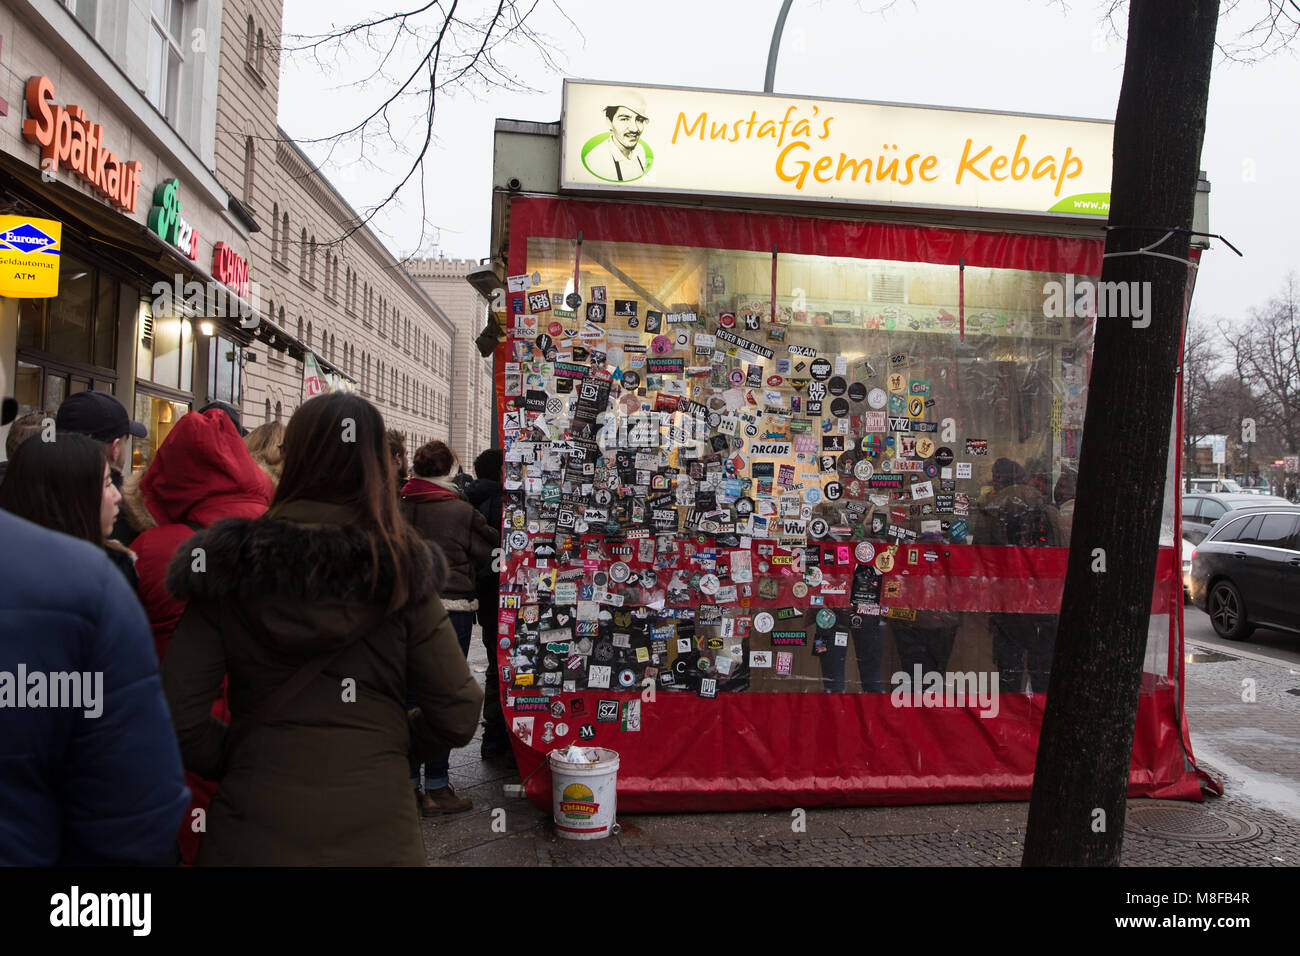 BERLIN, ALLEMAGNE - le 16 décembre 2017 : Queue de personnes en face de Mustafas Gemuse Kebap où l'un des plus populer Street food à Berlin city. Banque D'Images